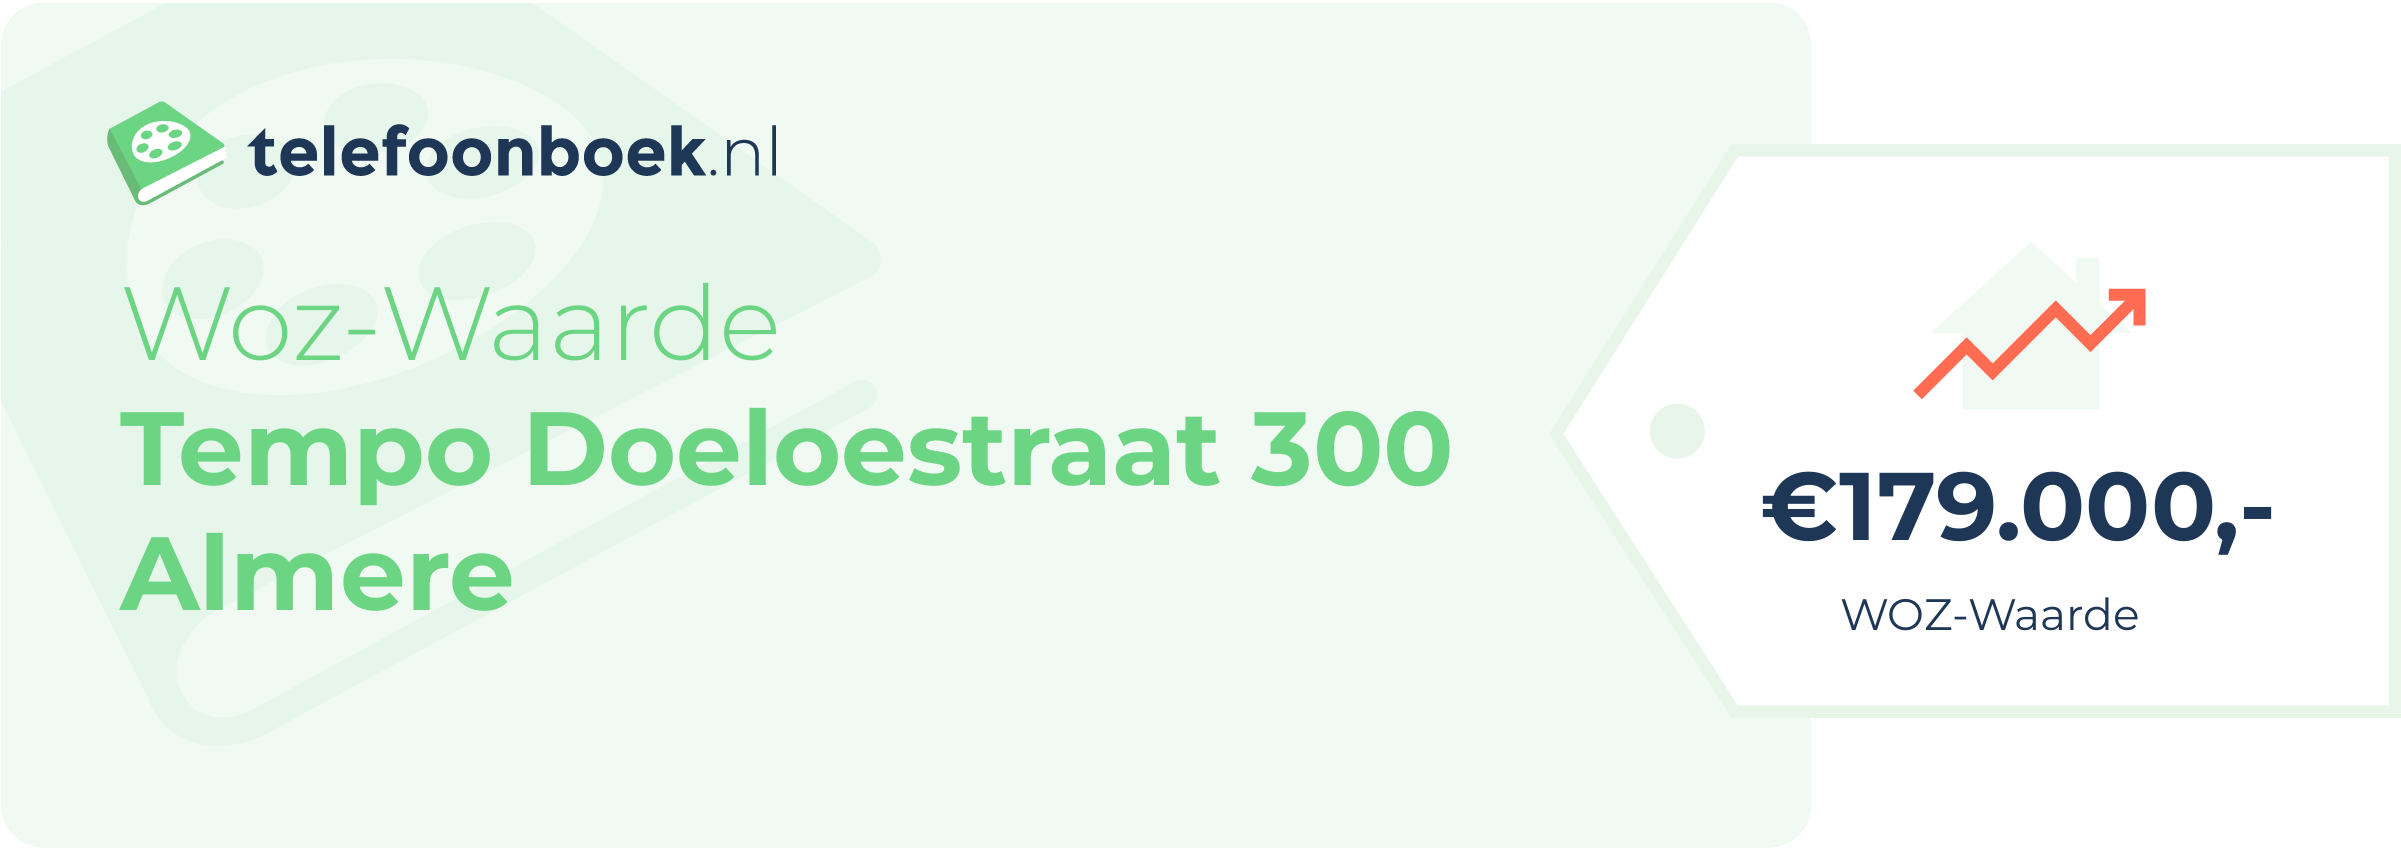 WOZ-waarde Tempo Doeloestraat 300 Almere